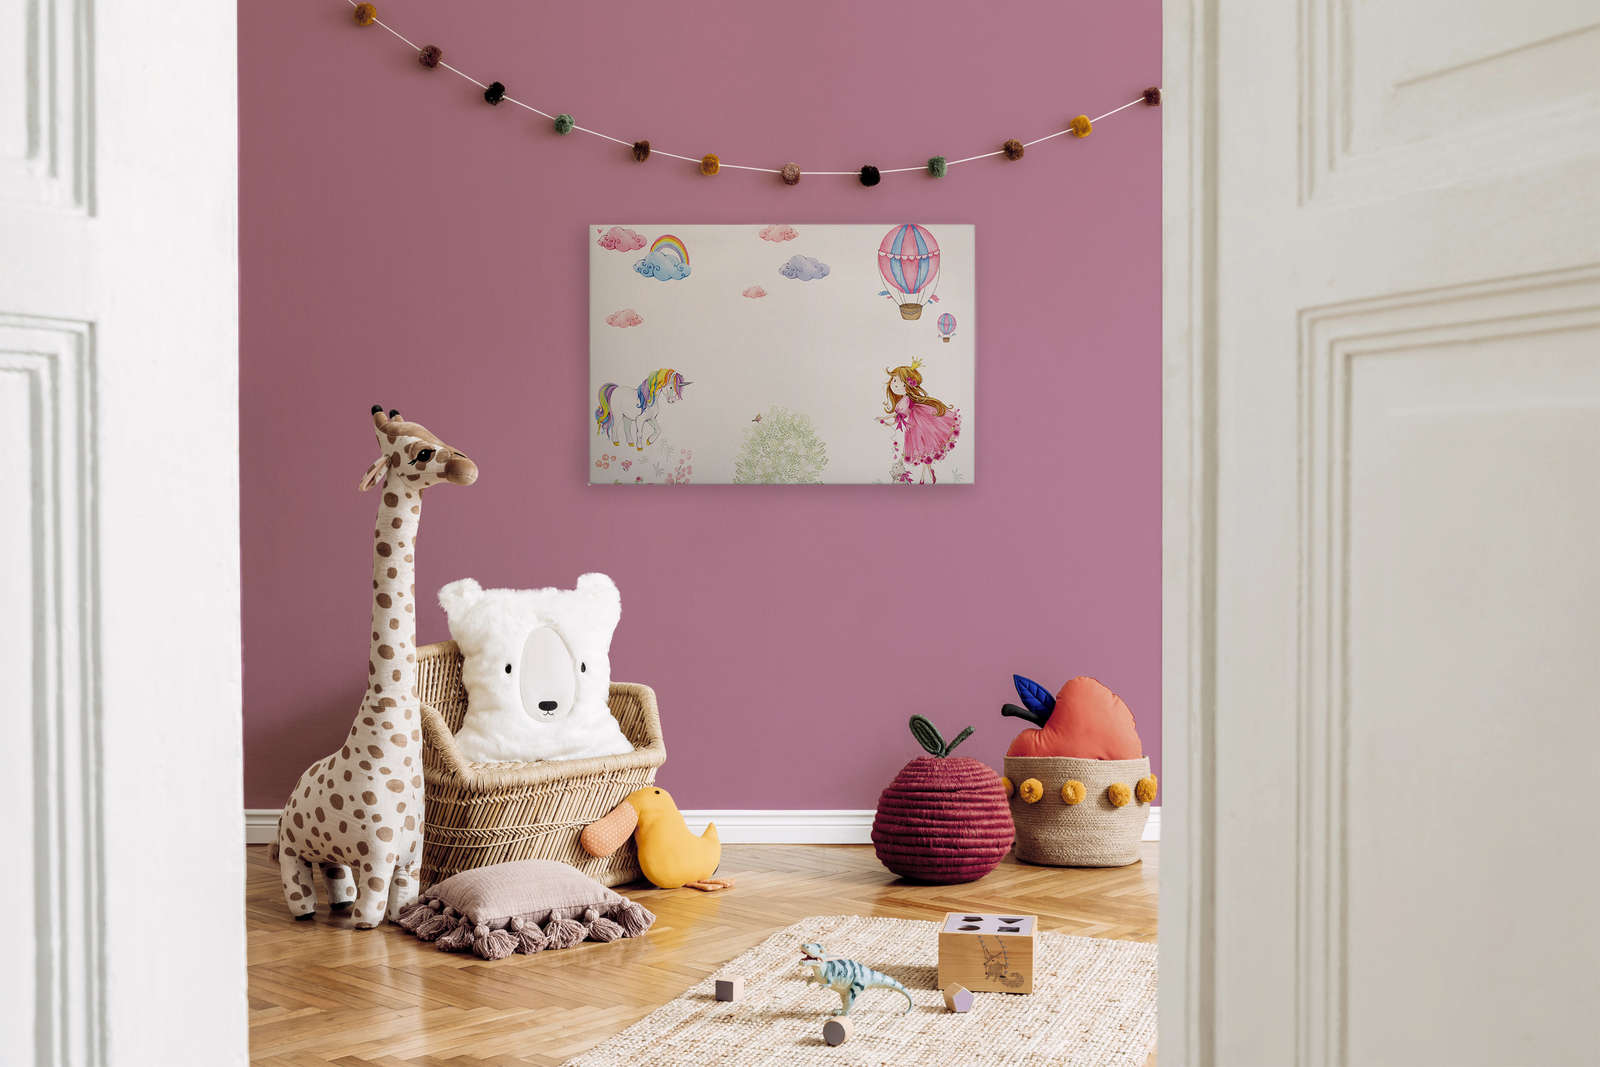             Cuadro Habitación infantil con princesa y unicornio - 0,90 m x 0,60 m
        